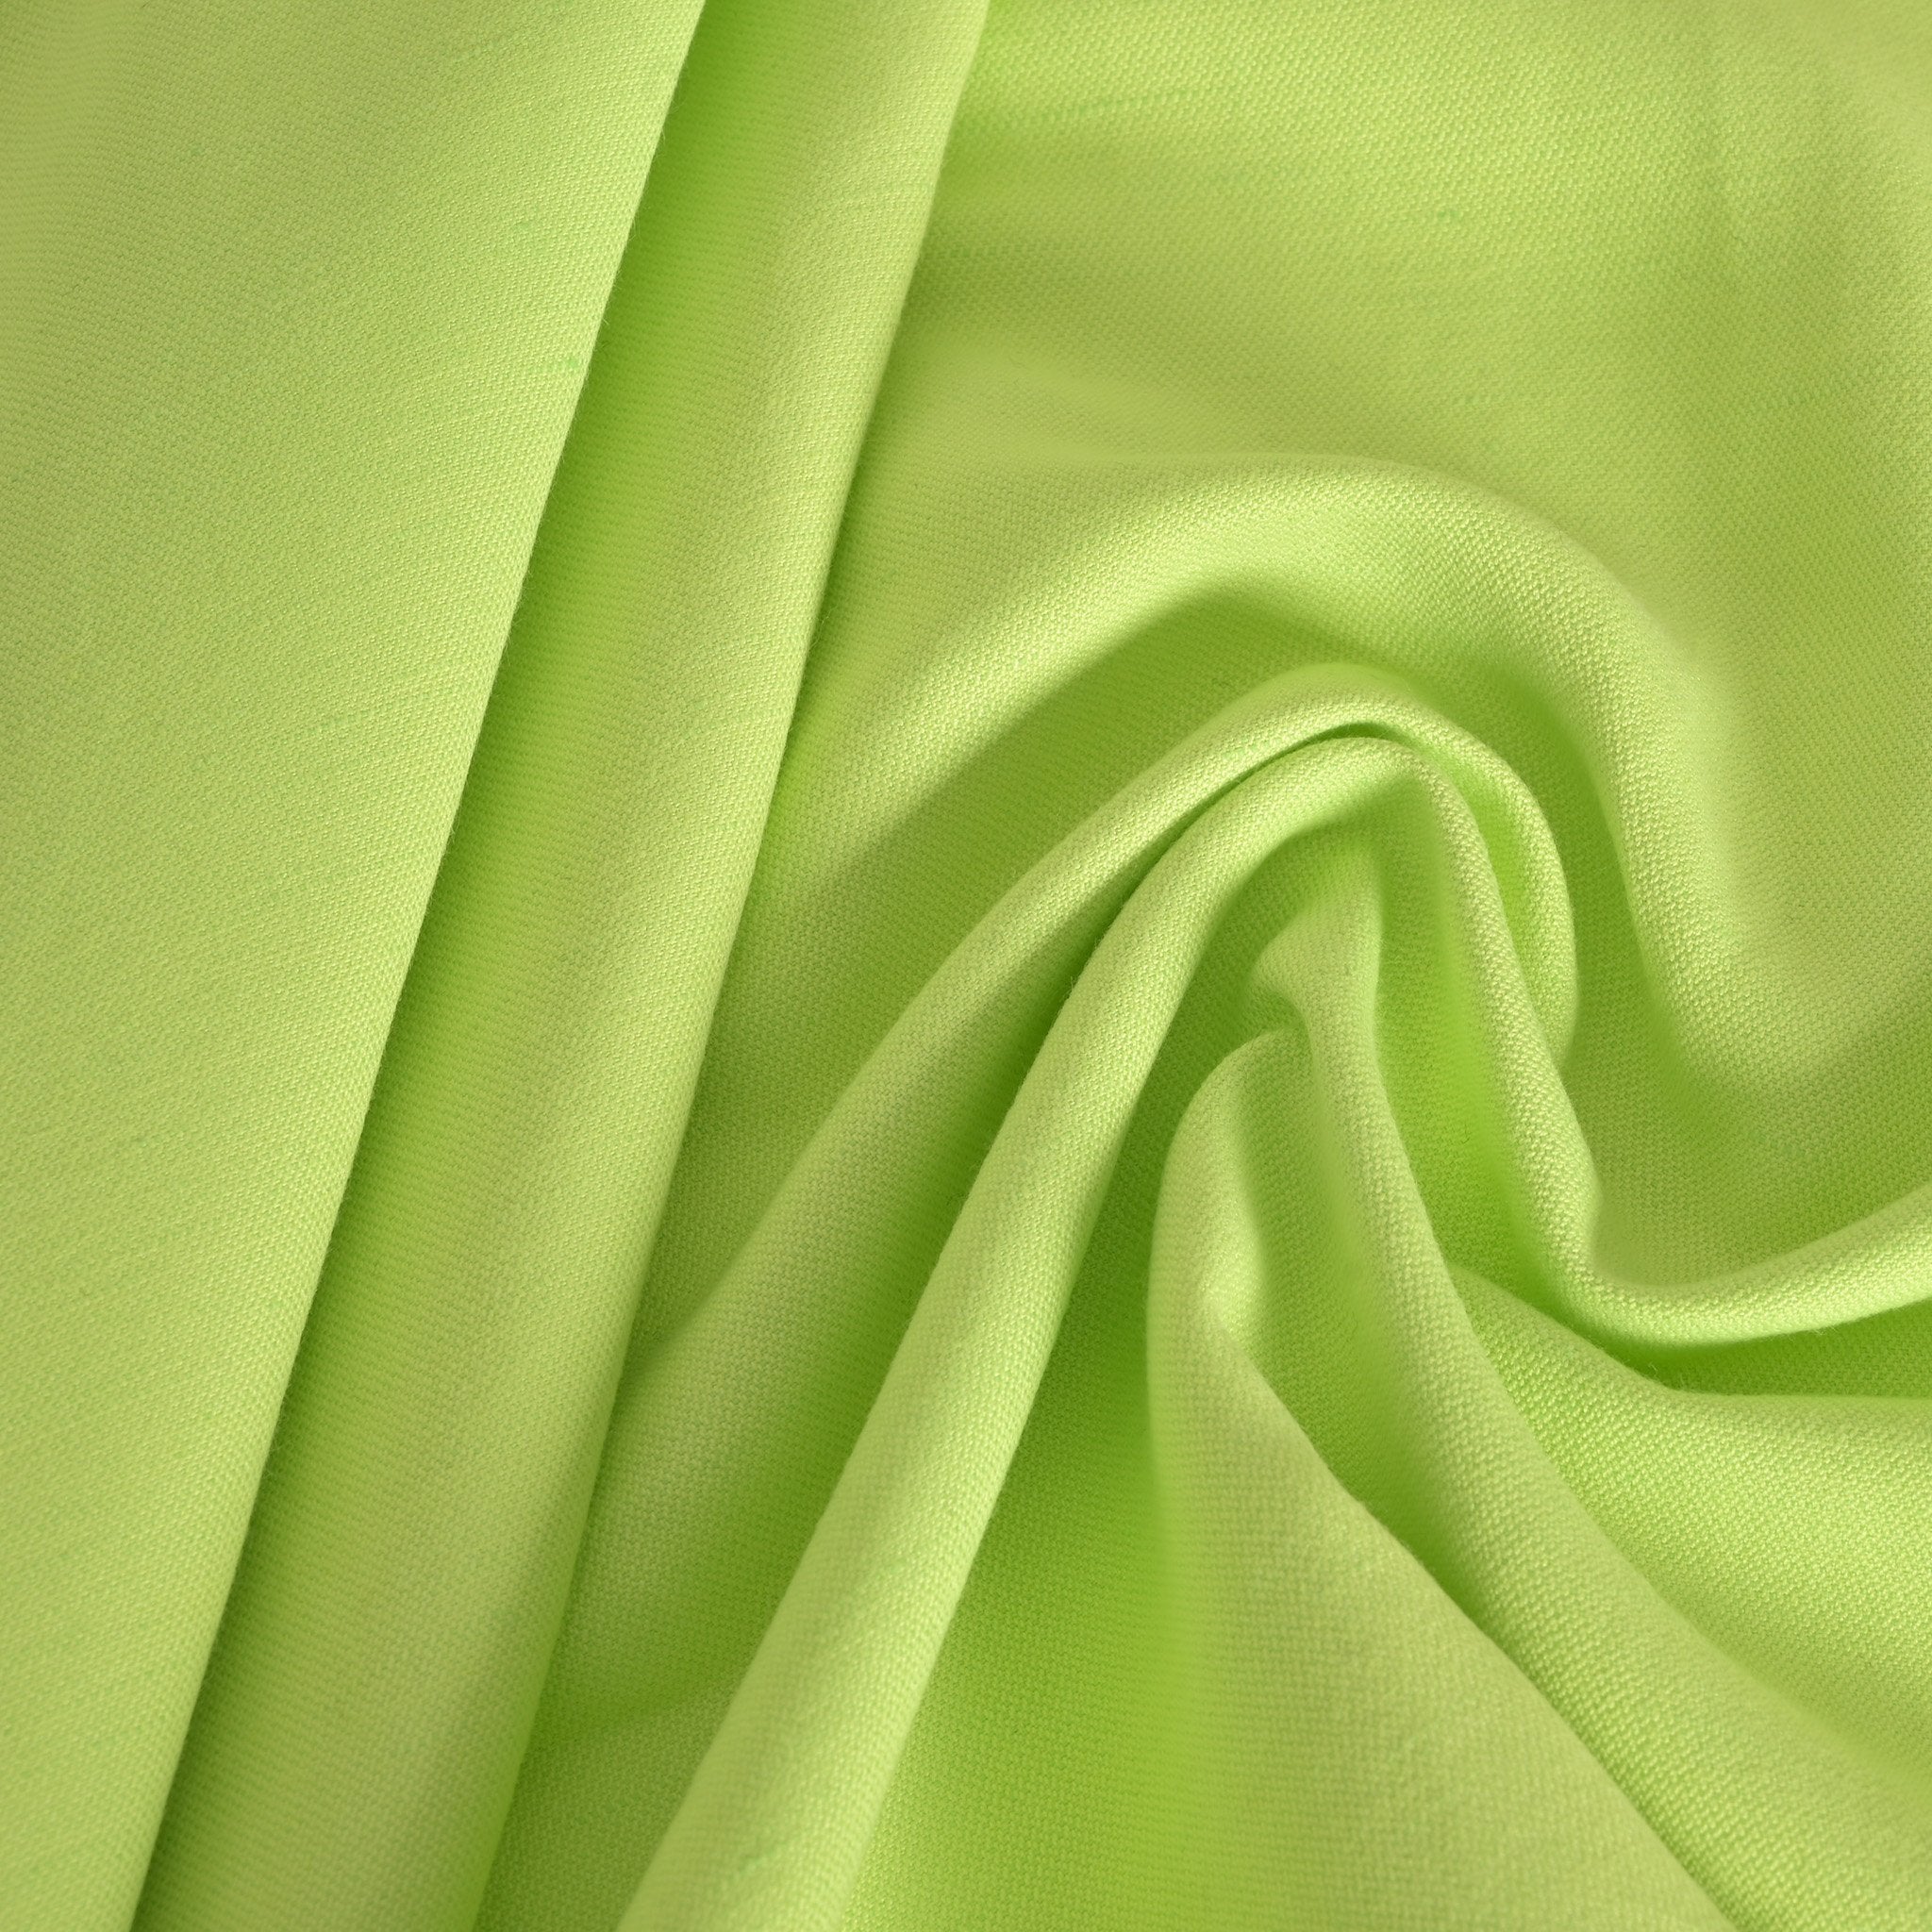 Citrus Green Soft Linen Fabric 99746